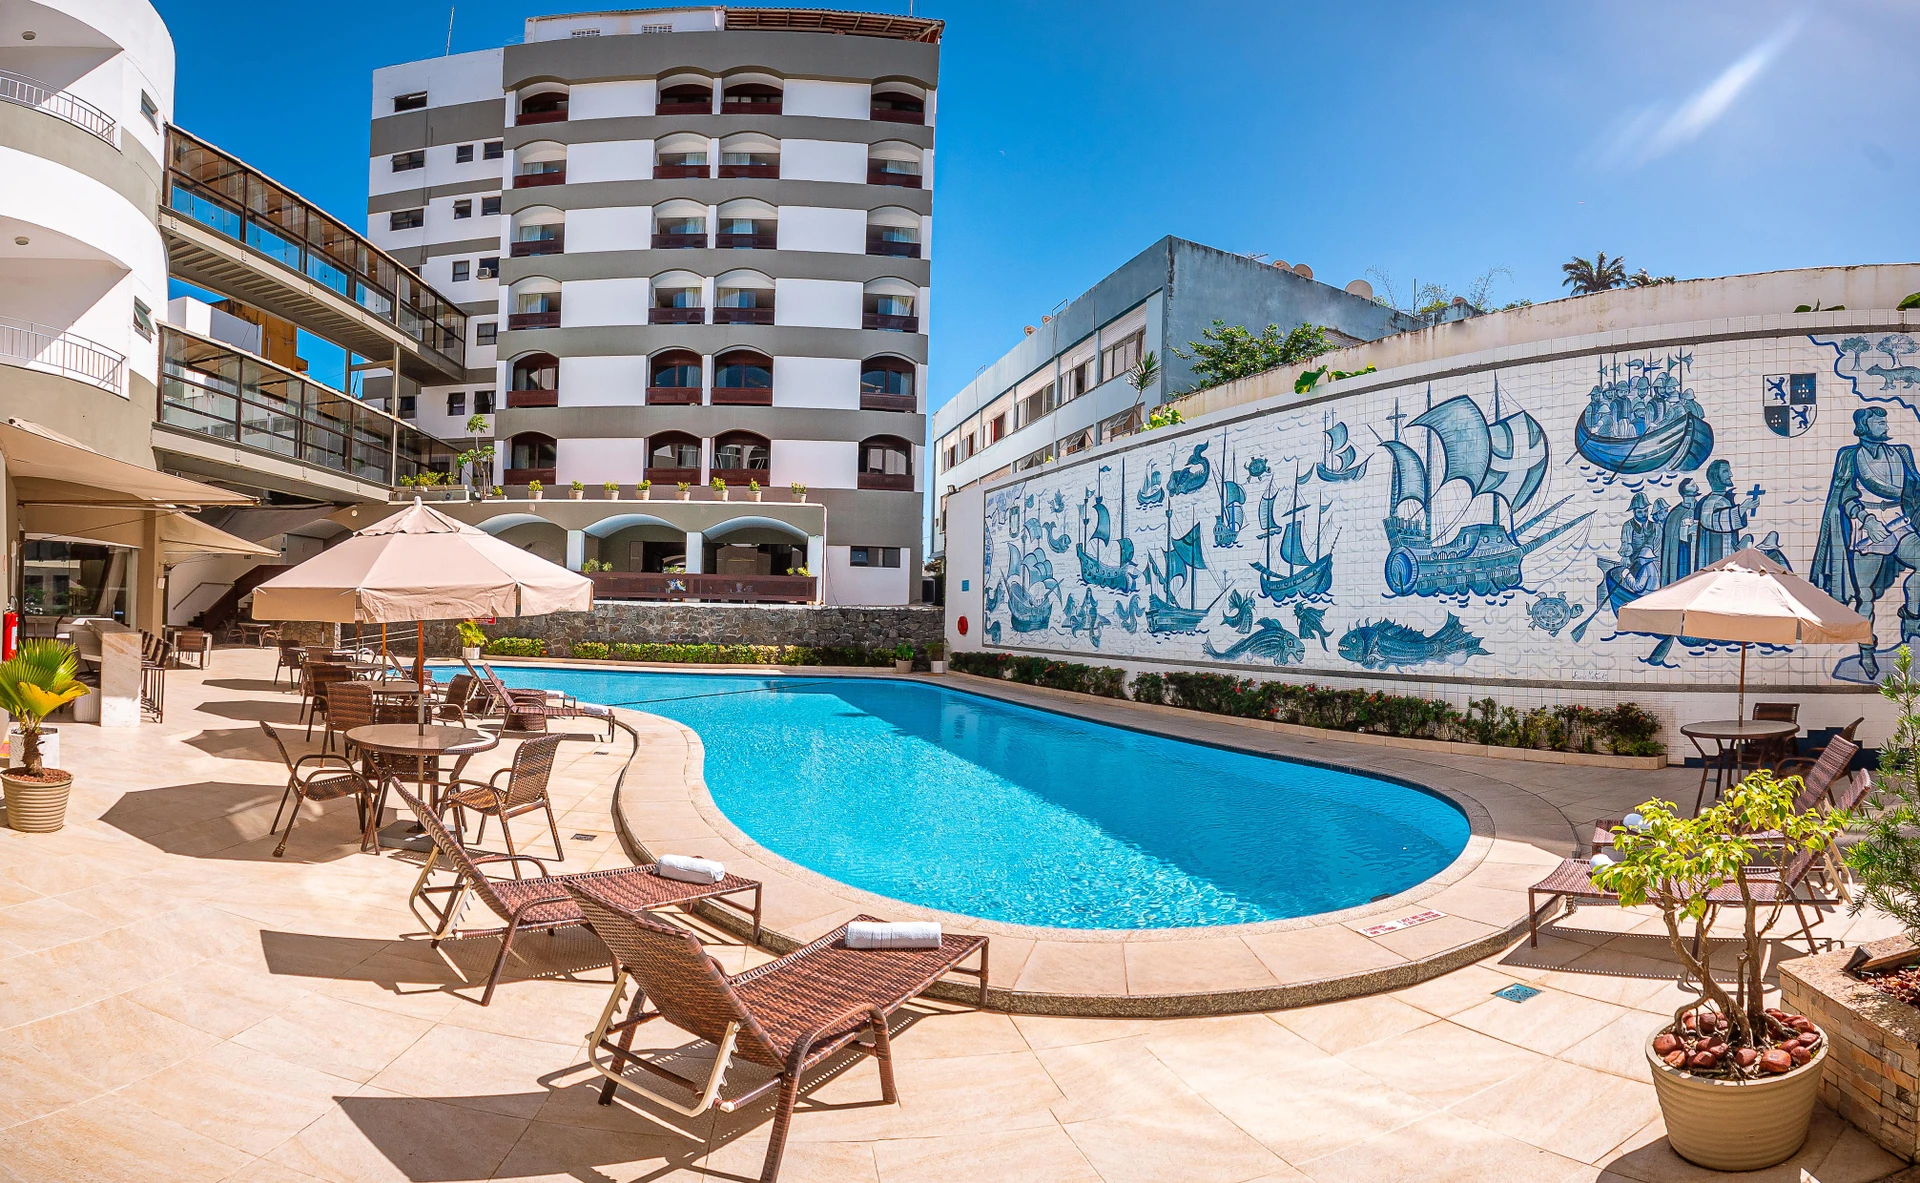 Grande Hotel da Barra | Onde se hospedar em Salvador | Conexão123